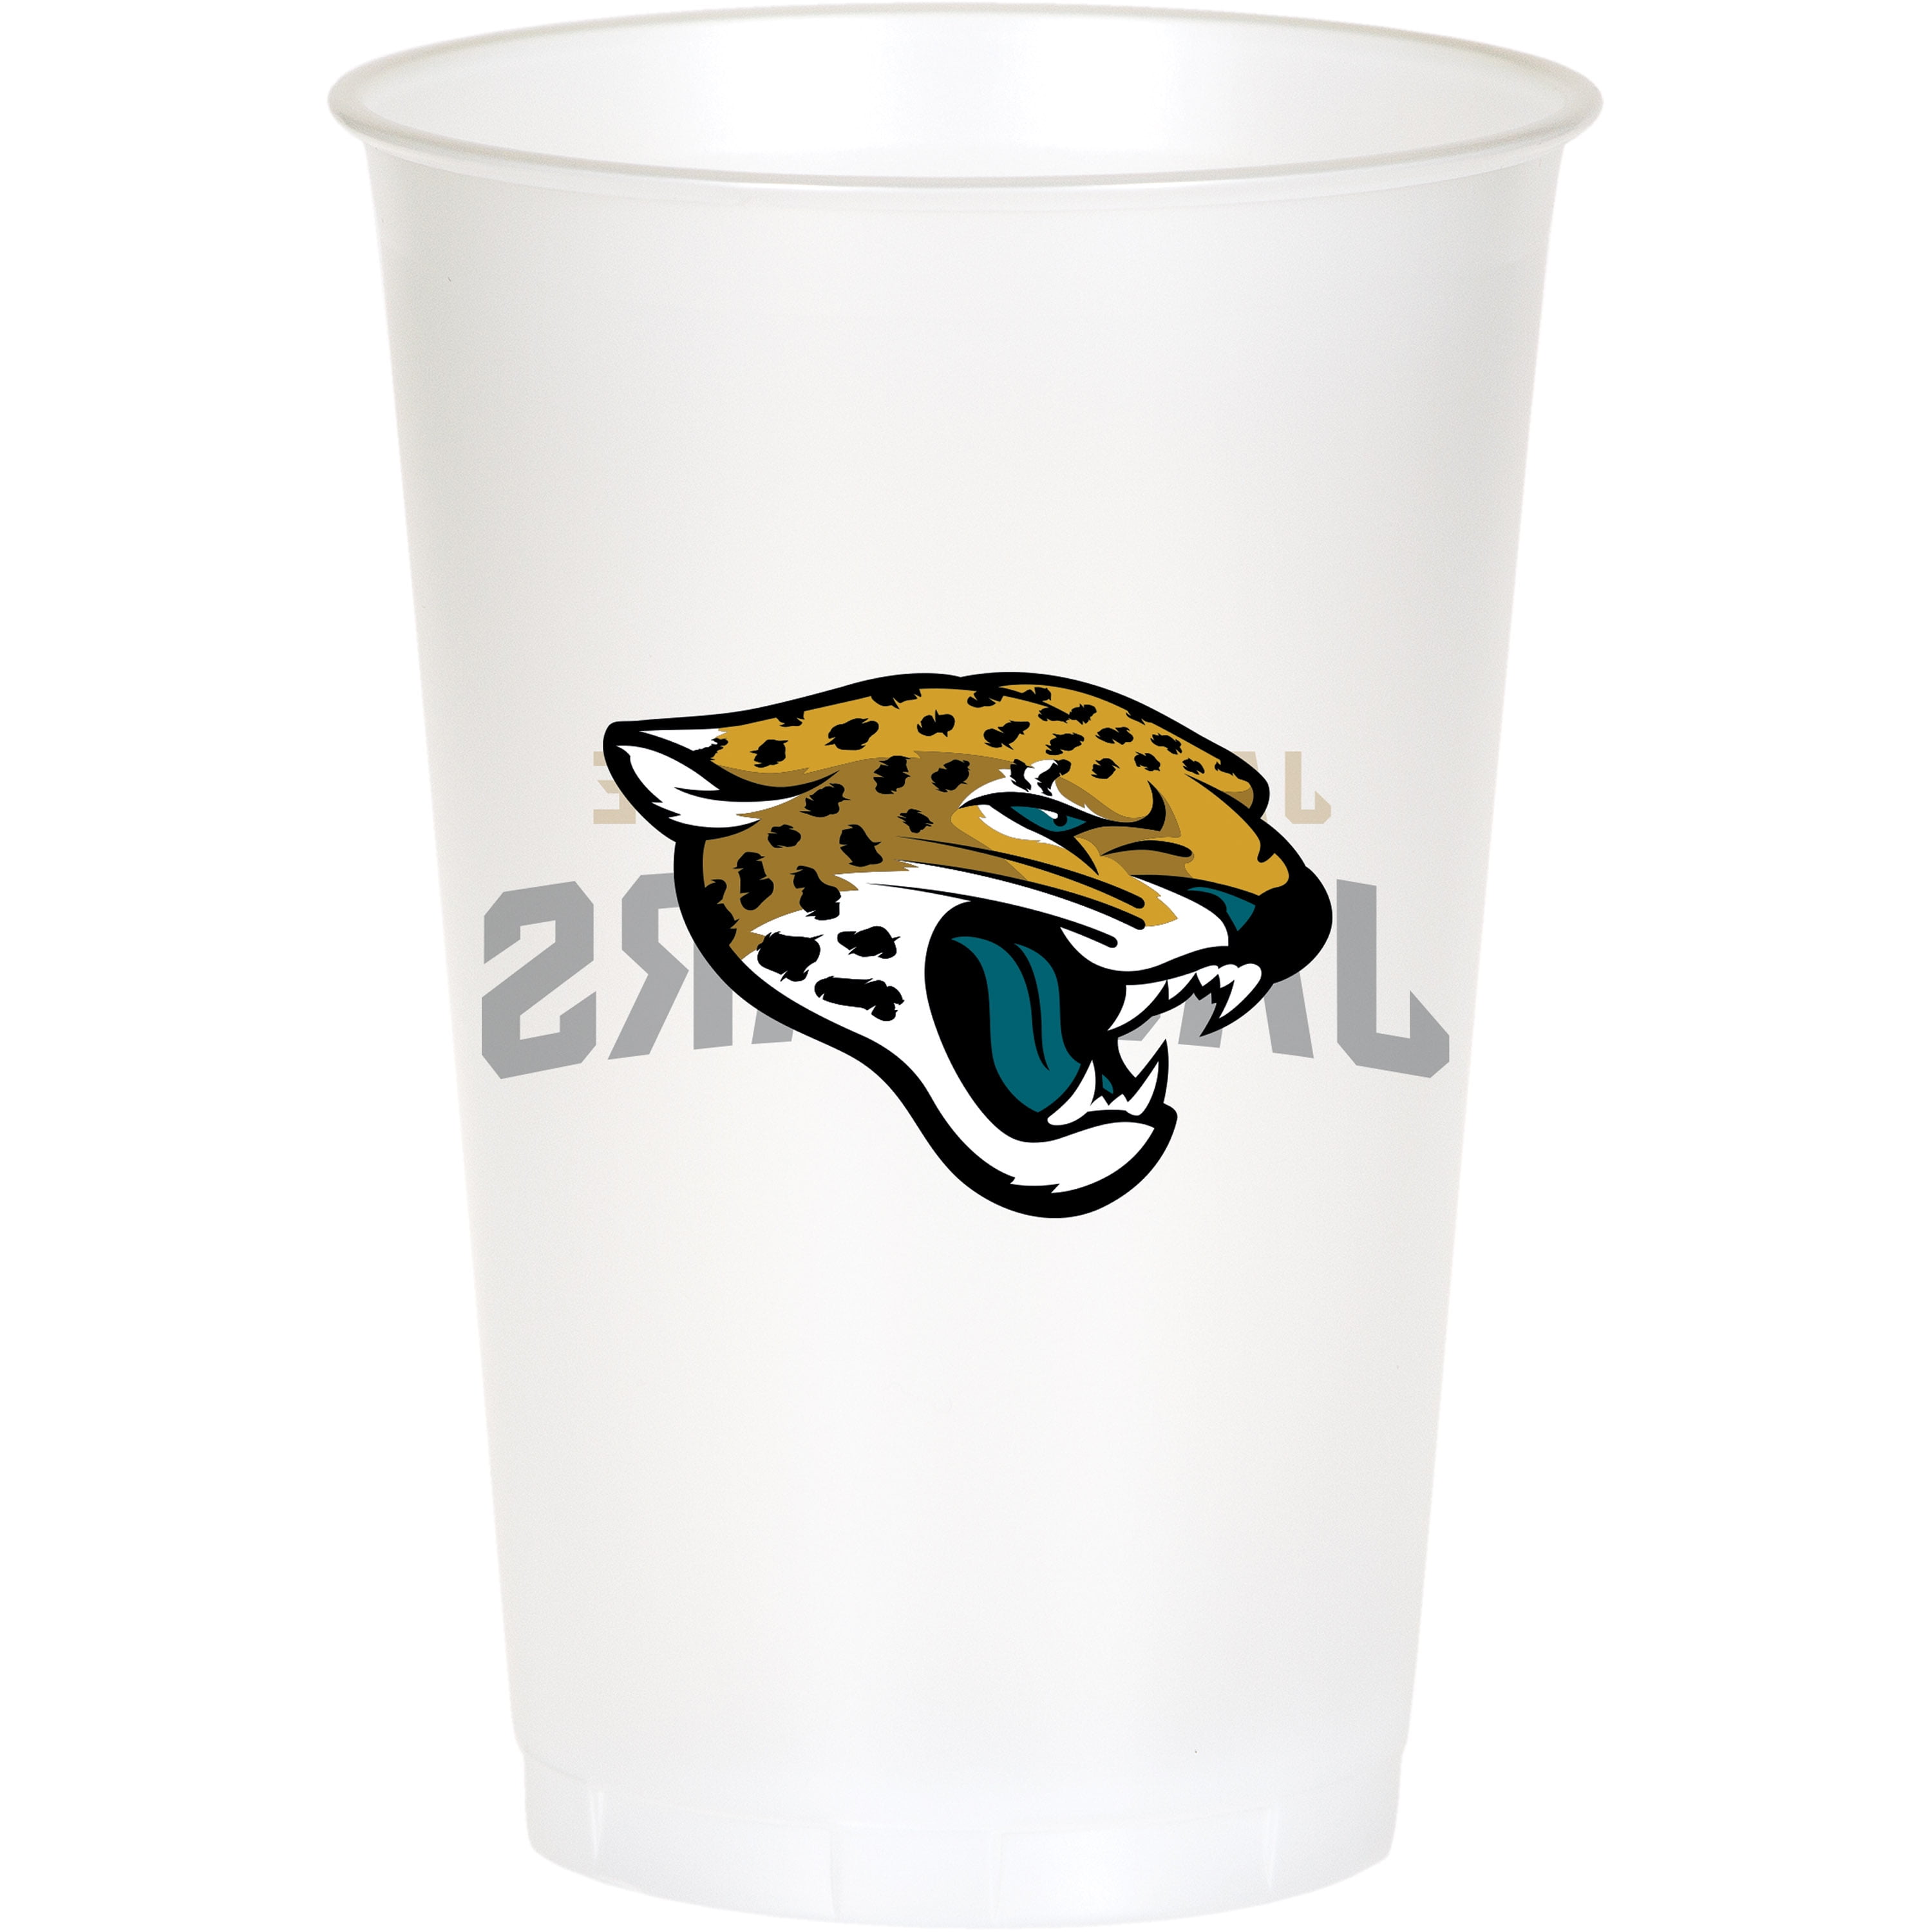 https://i5.walmartimages.com/seo/Jacksonville-Jaguars-Plastic-Cups-24-Count-for-24-Guests_f42cf560-f5c8-4ad9-bccb-3b3aff413ad7_1.97aad2a5f64e1fedead1732146d5f759.jpeg